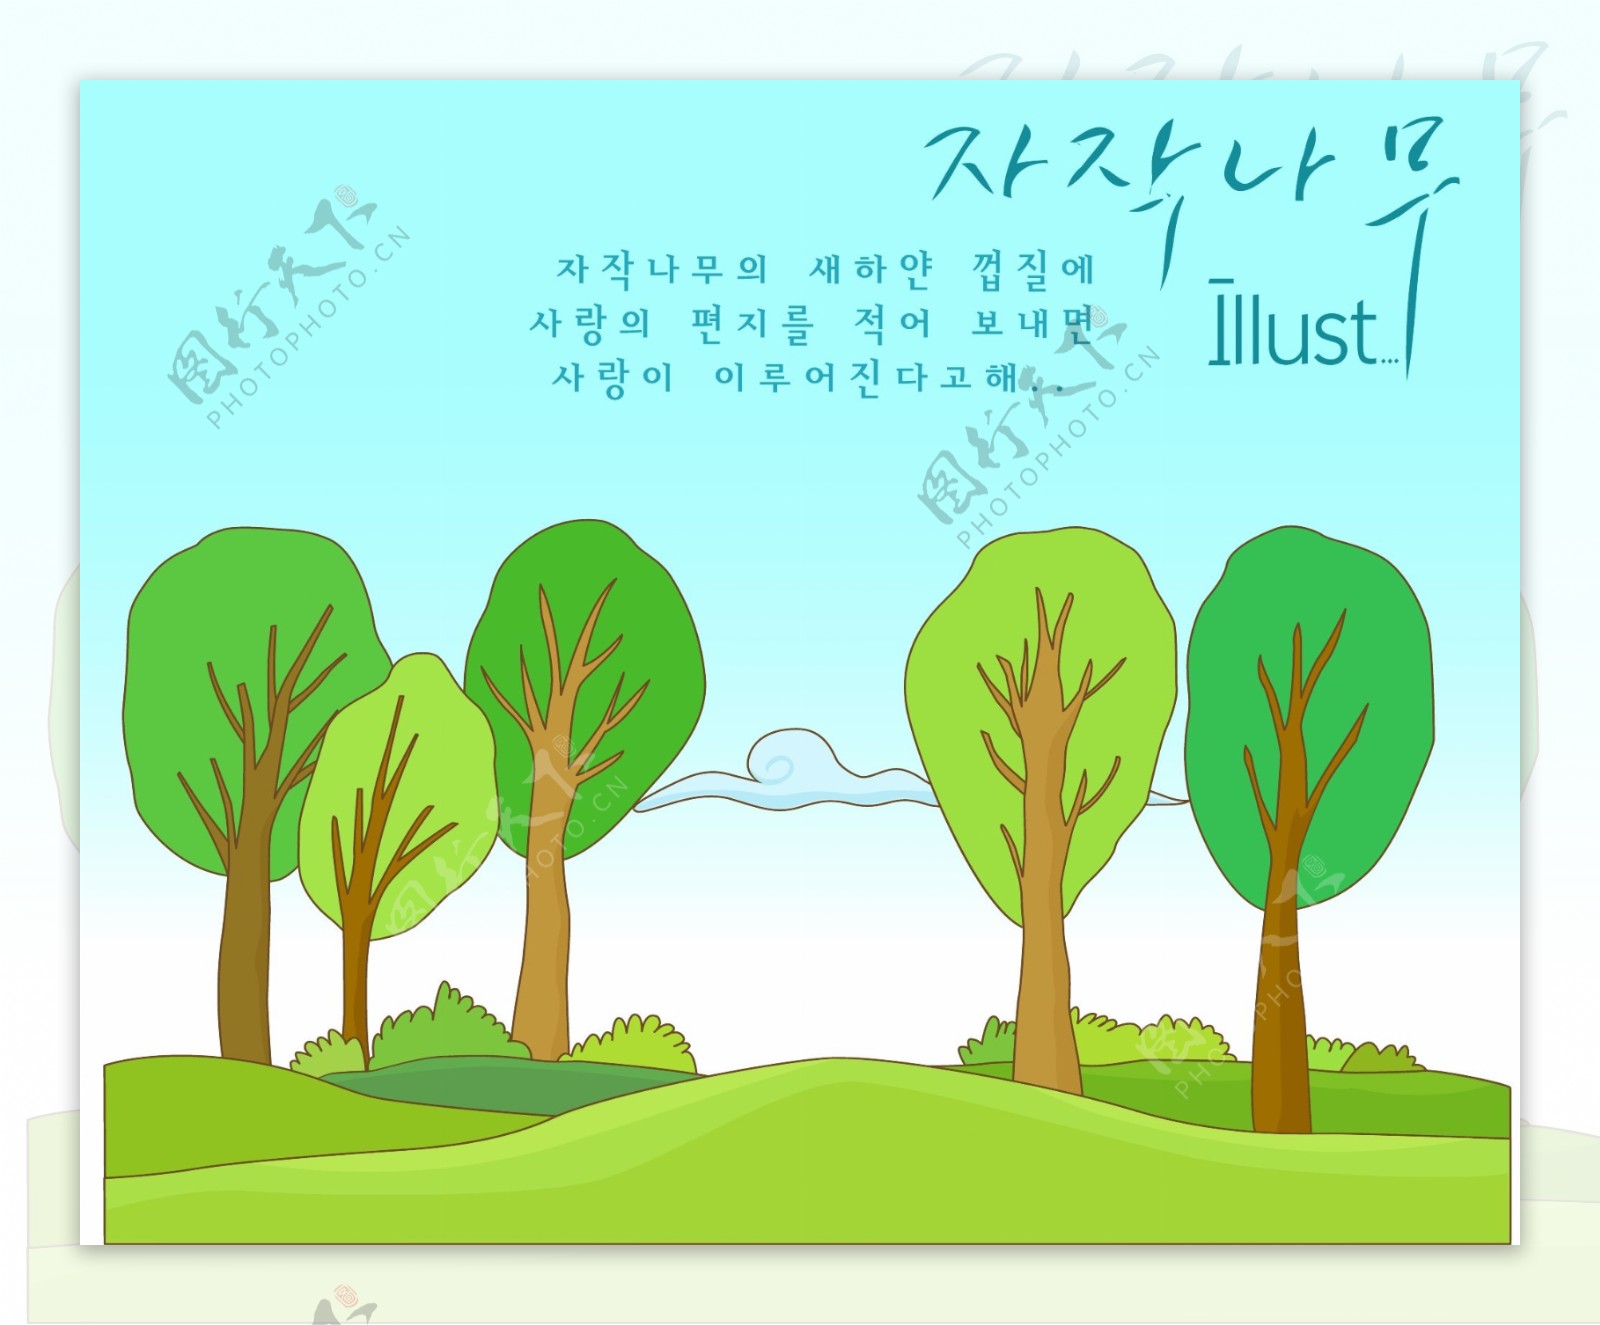 郊外矢量素材矢量春天矢量风景韩国风景花朵绿色叶子